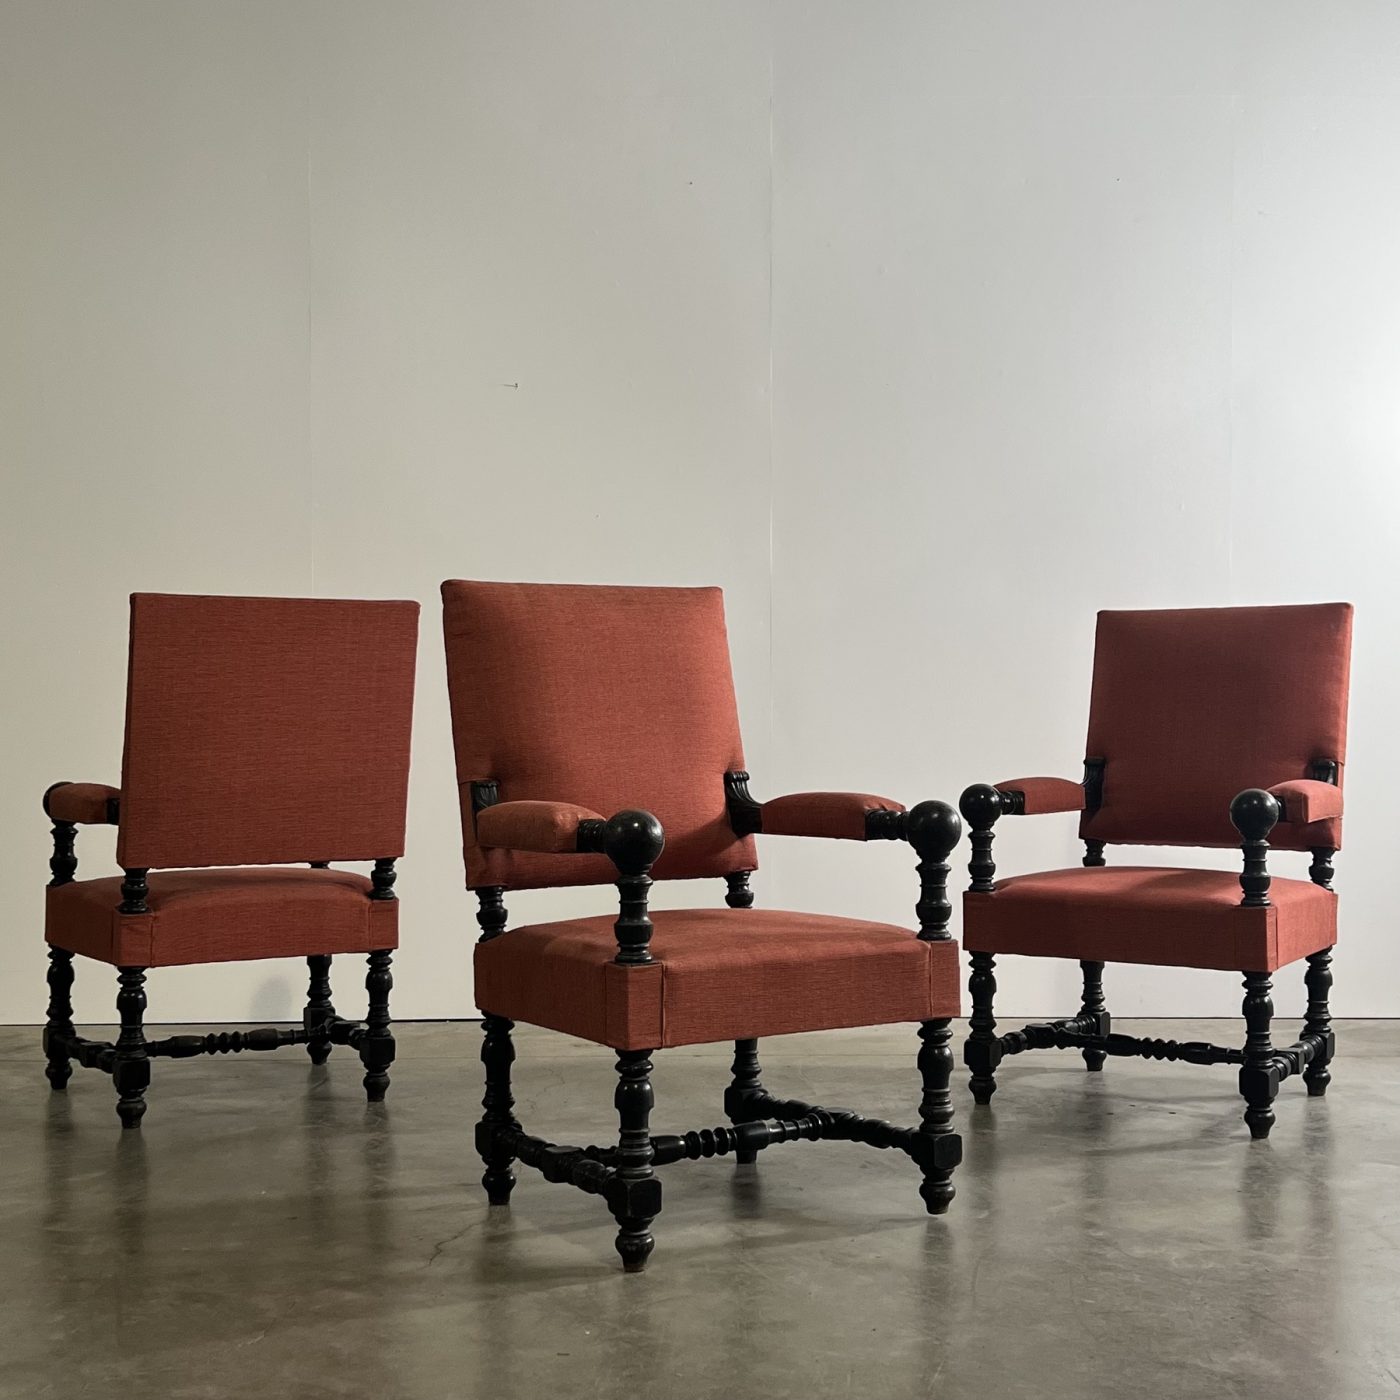 objet-vagabond-napoleon3-armchairs0001